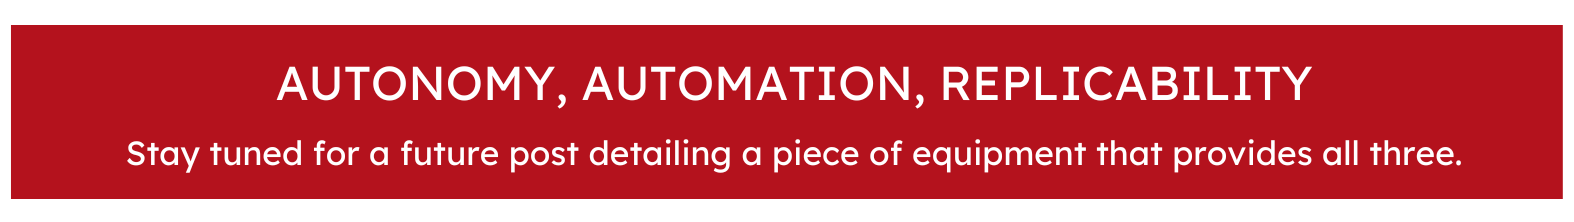 automony automation replication